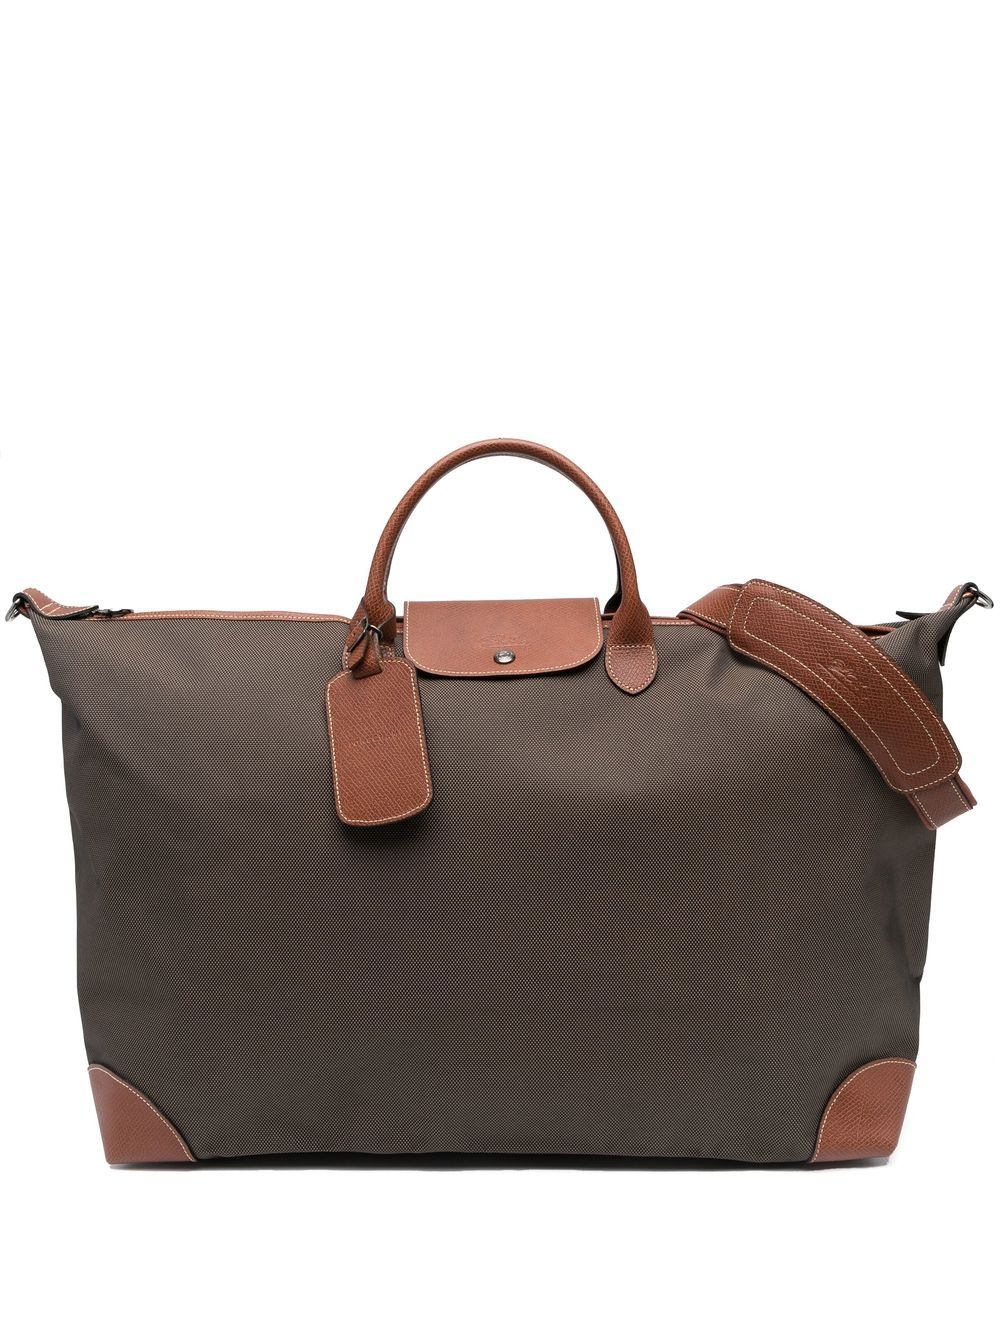 Longchamp medium Boxford travel bag - Brown von Longchamp